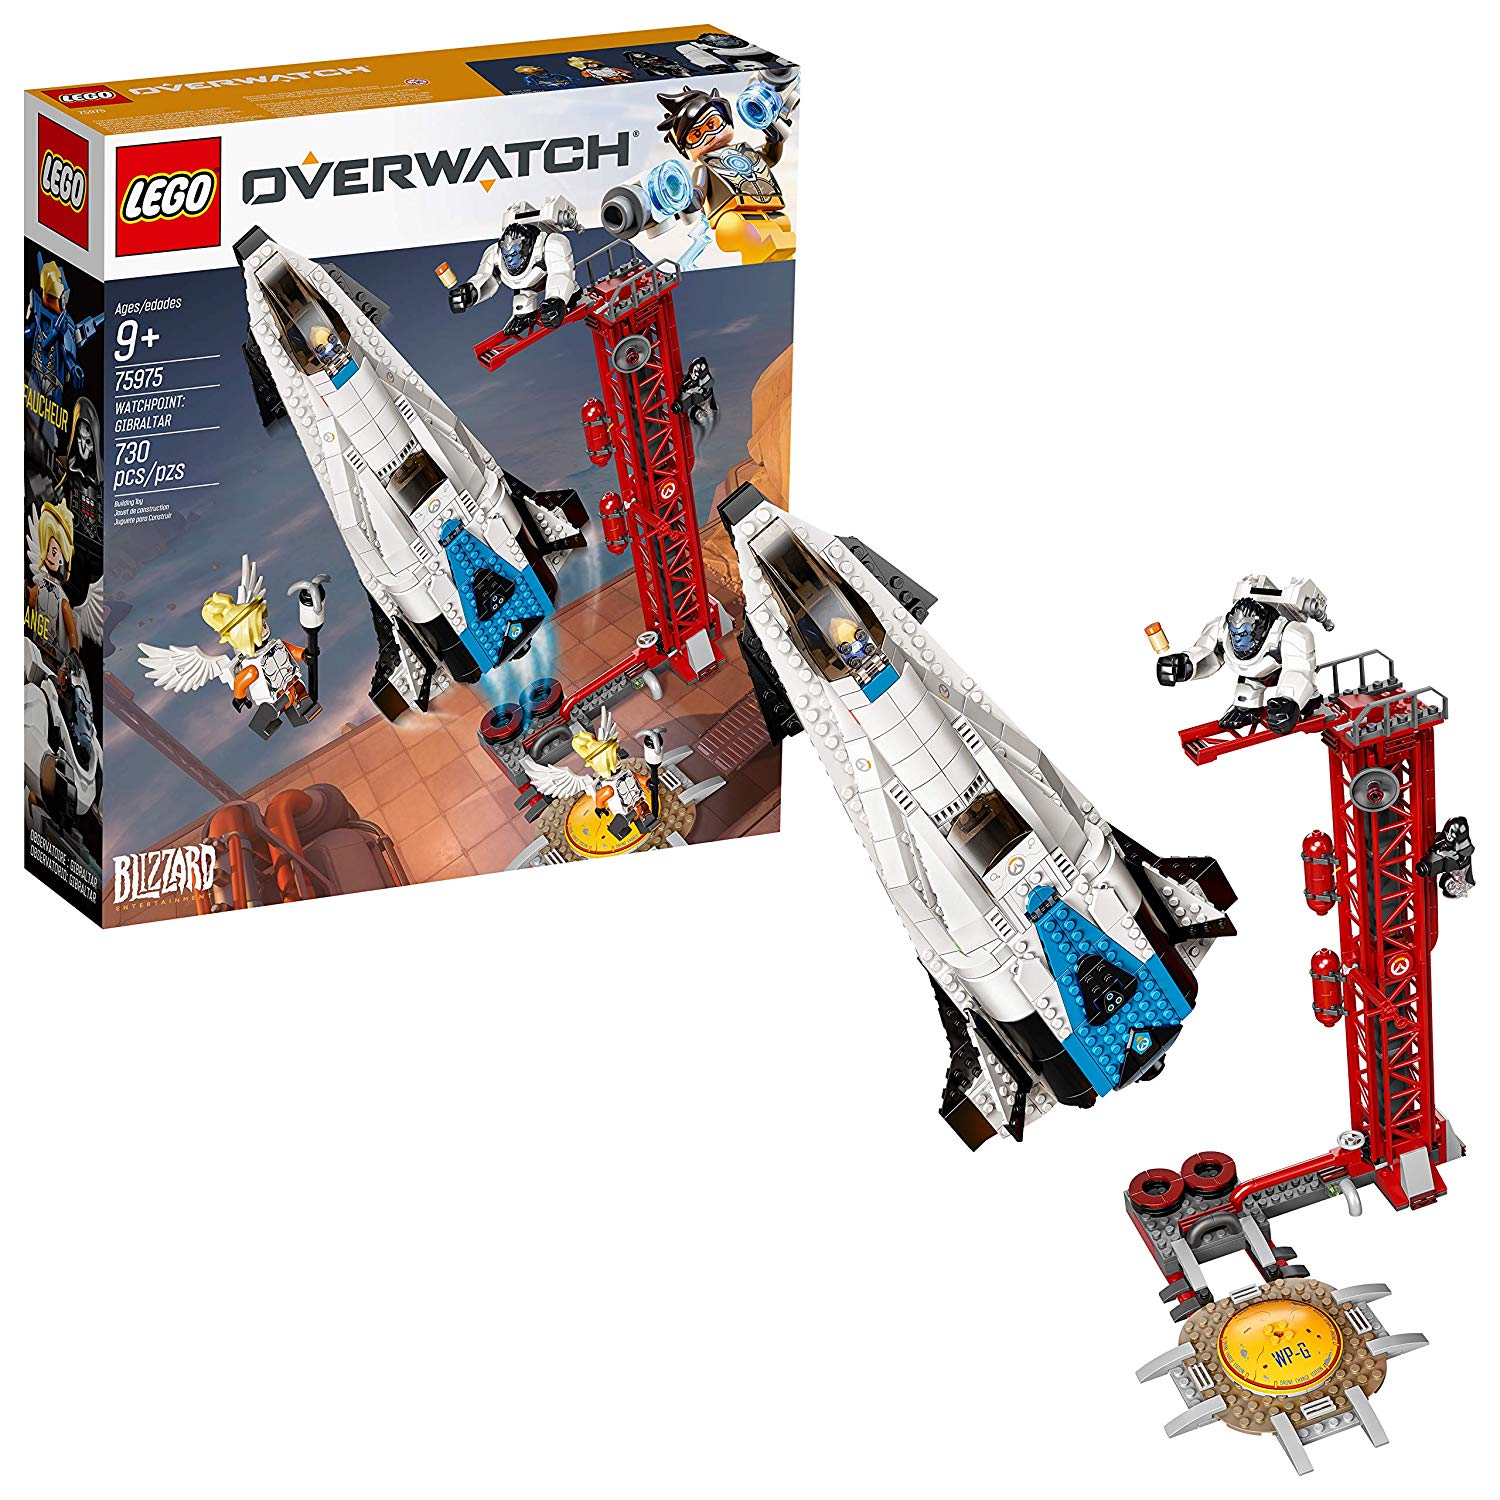 Lego Overwatch 75975 Watchpoint: Gibraltar (730 Pieces)